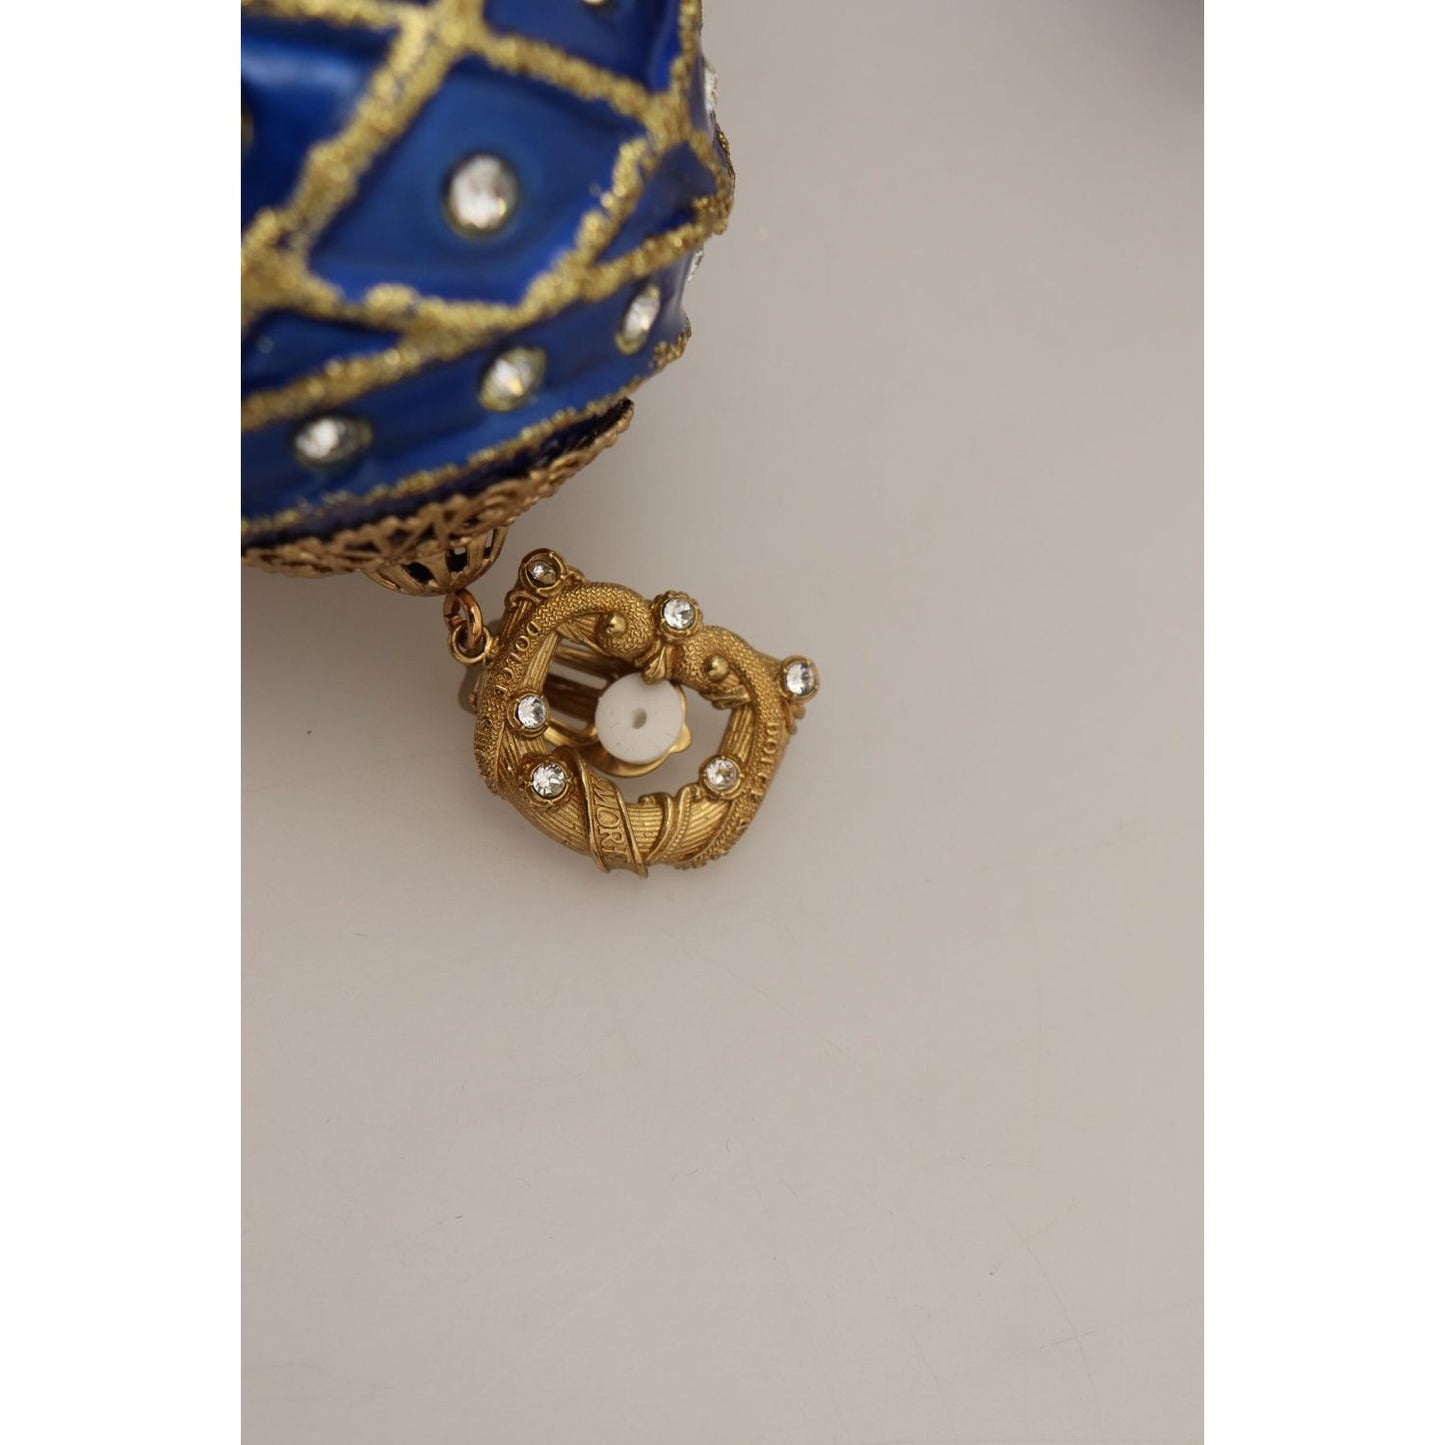 Dolce & Gabbana Elegant Dangling Crystal Christmas Ball Earrings gold-brass-blue-dangle-ball-crystal-clip-on-earrings